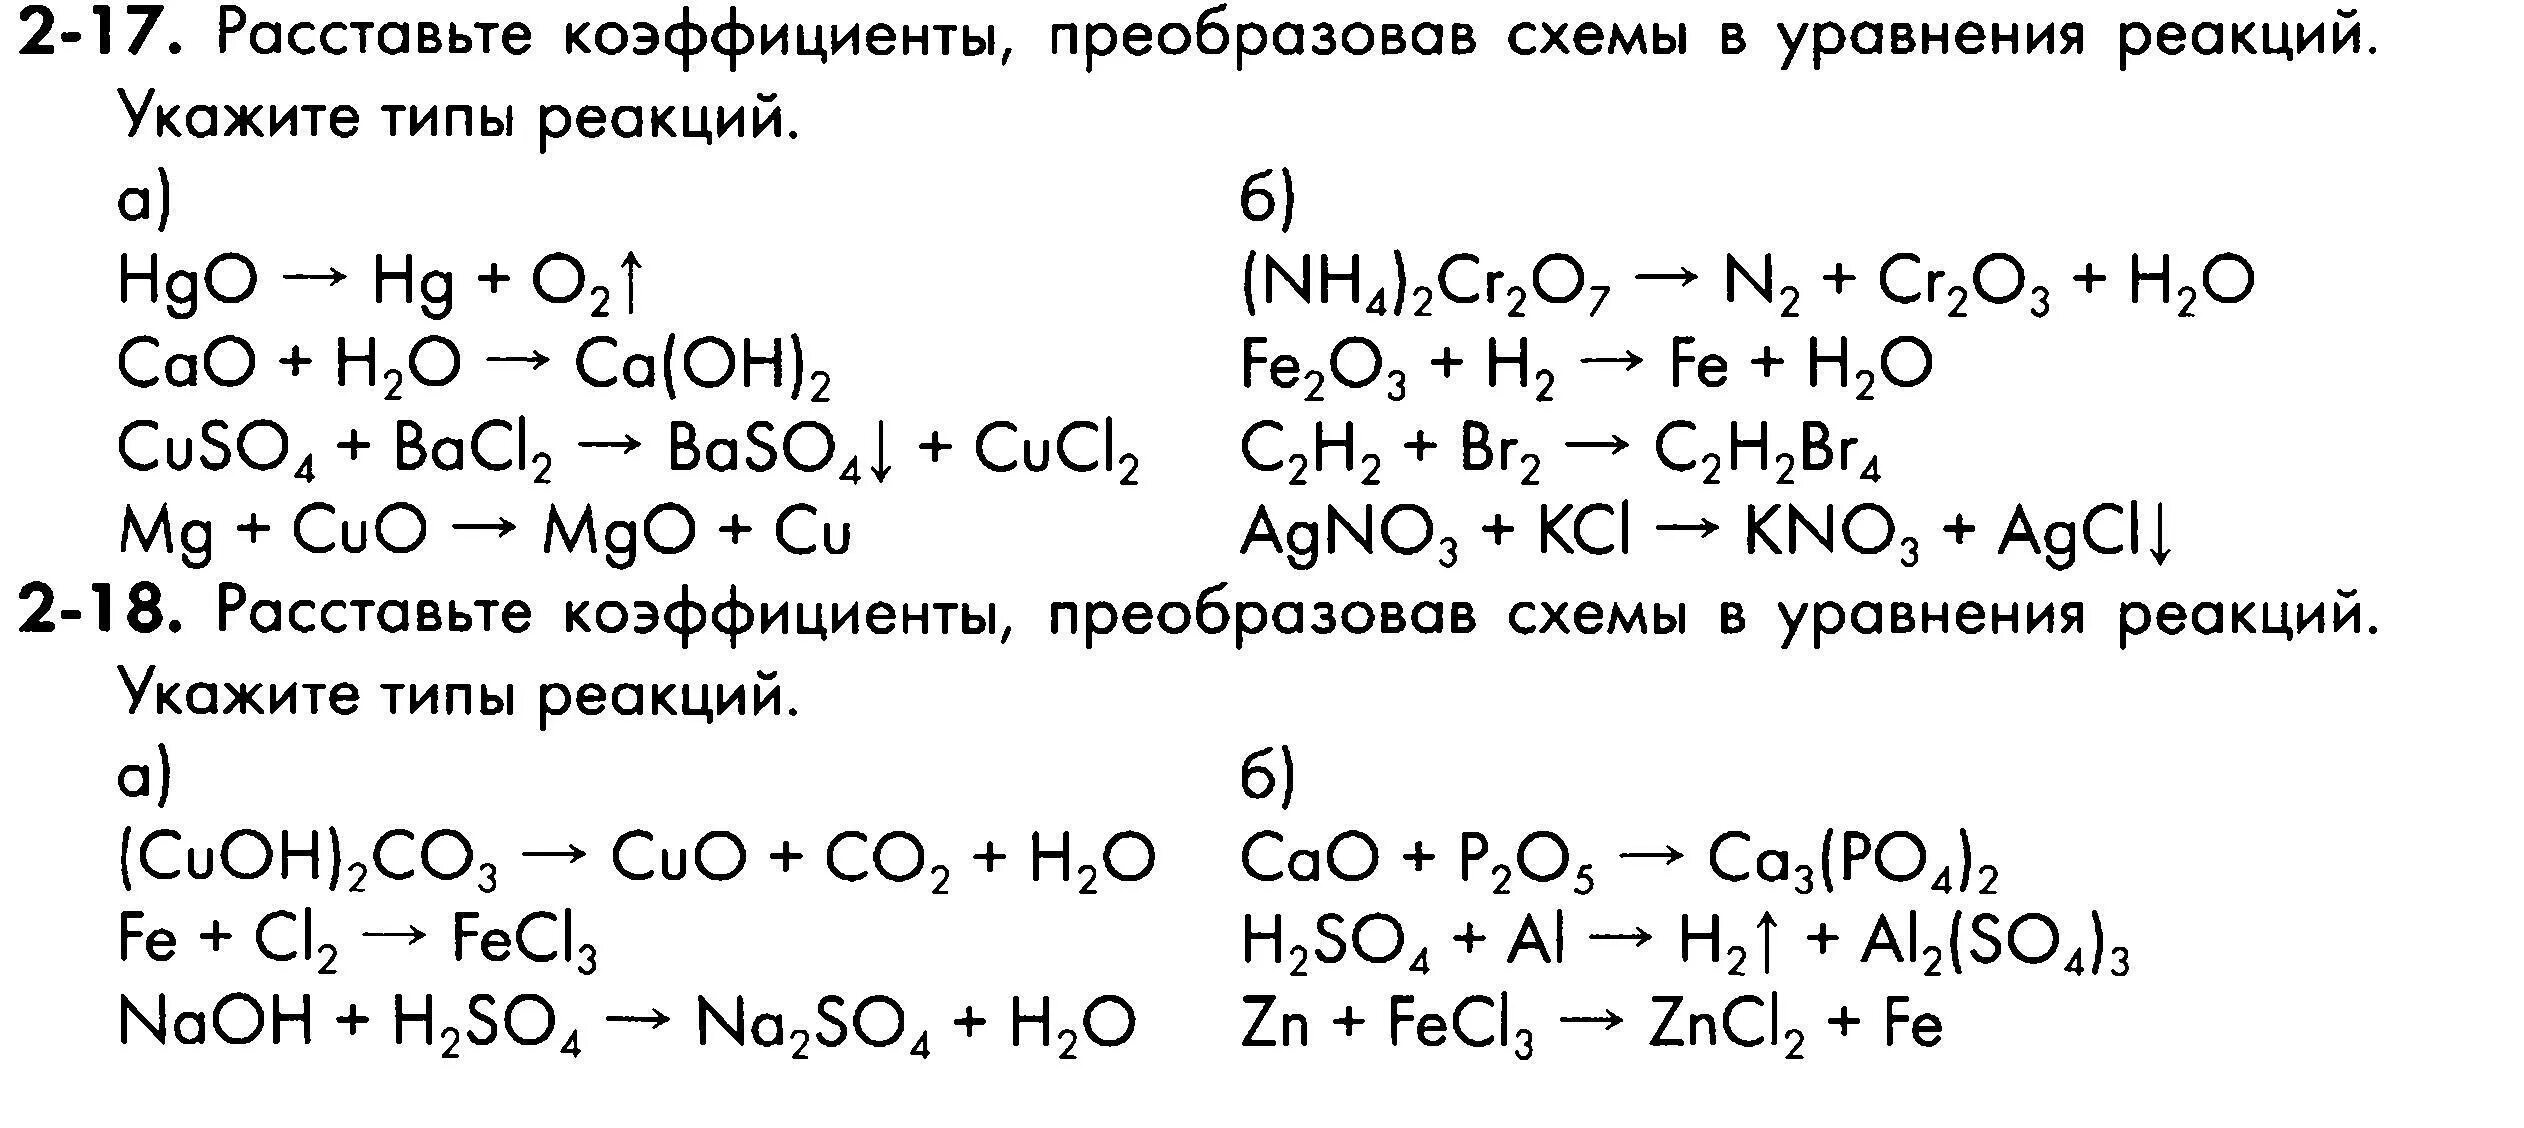 Химические реакции 2 8 ответы. Уравнения химических реакций 8 класс задания. Химия 8 класс схемы химических реакций. Химия схема реакций уравнений. Уравнения реакций химия 8 класс.